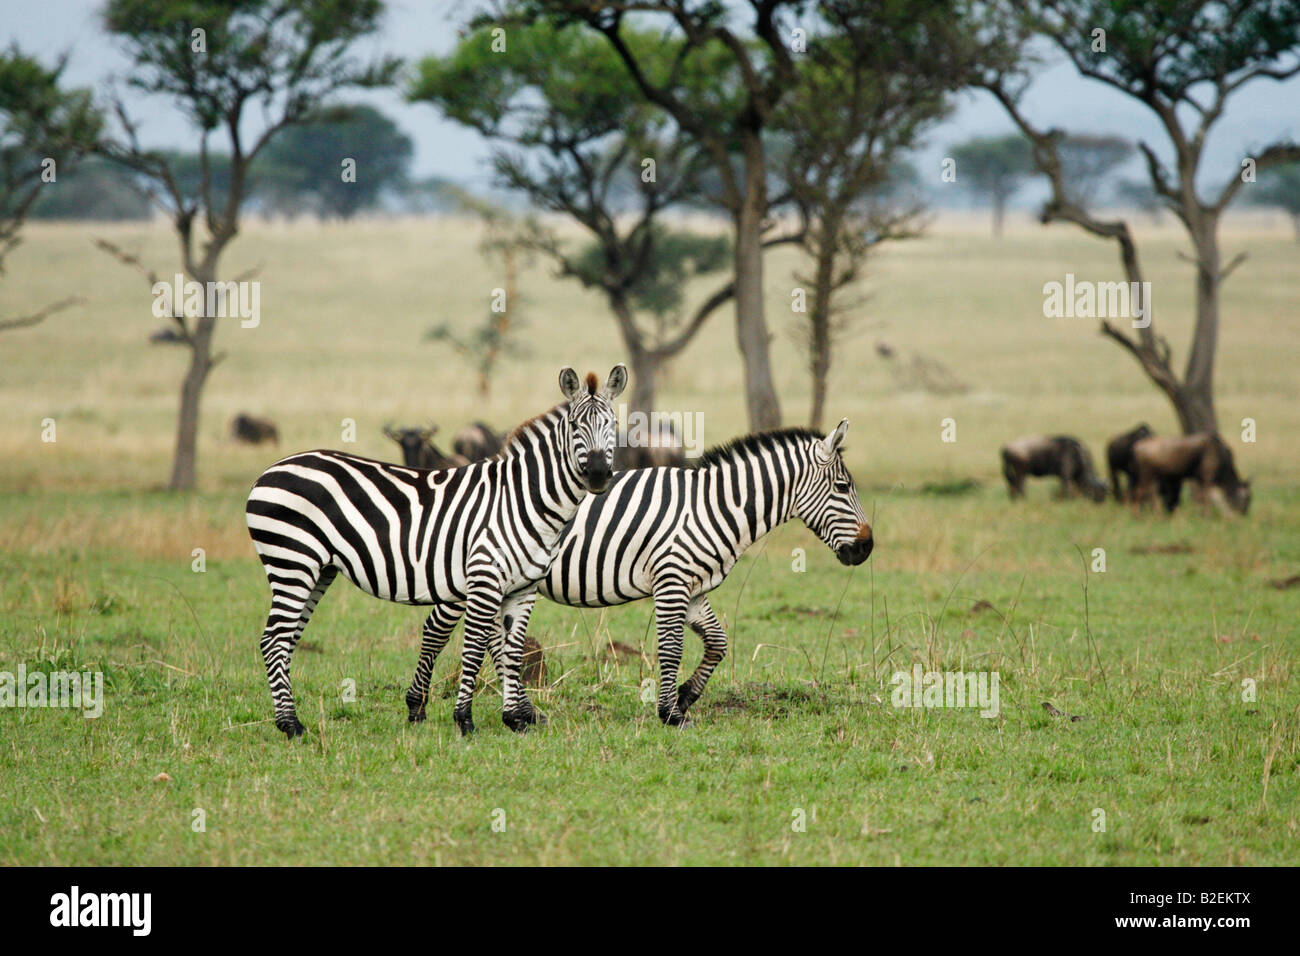 Dos llanuras cebras sentados juntos en una sabana serengeti abierto Foto de stock